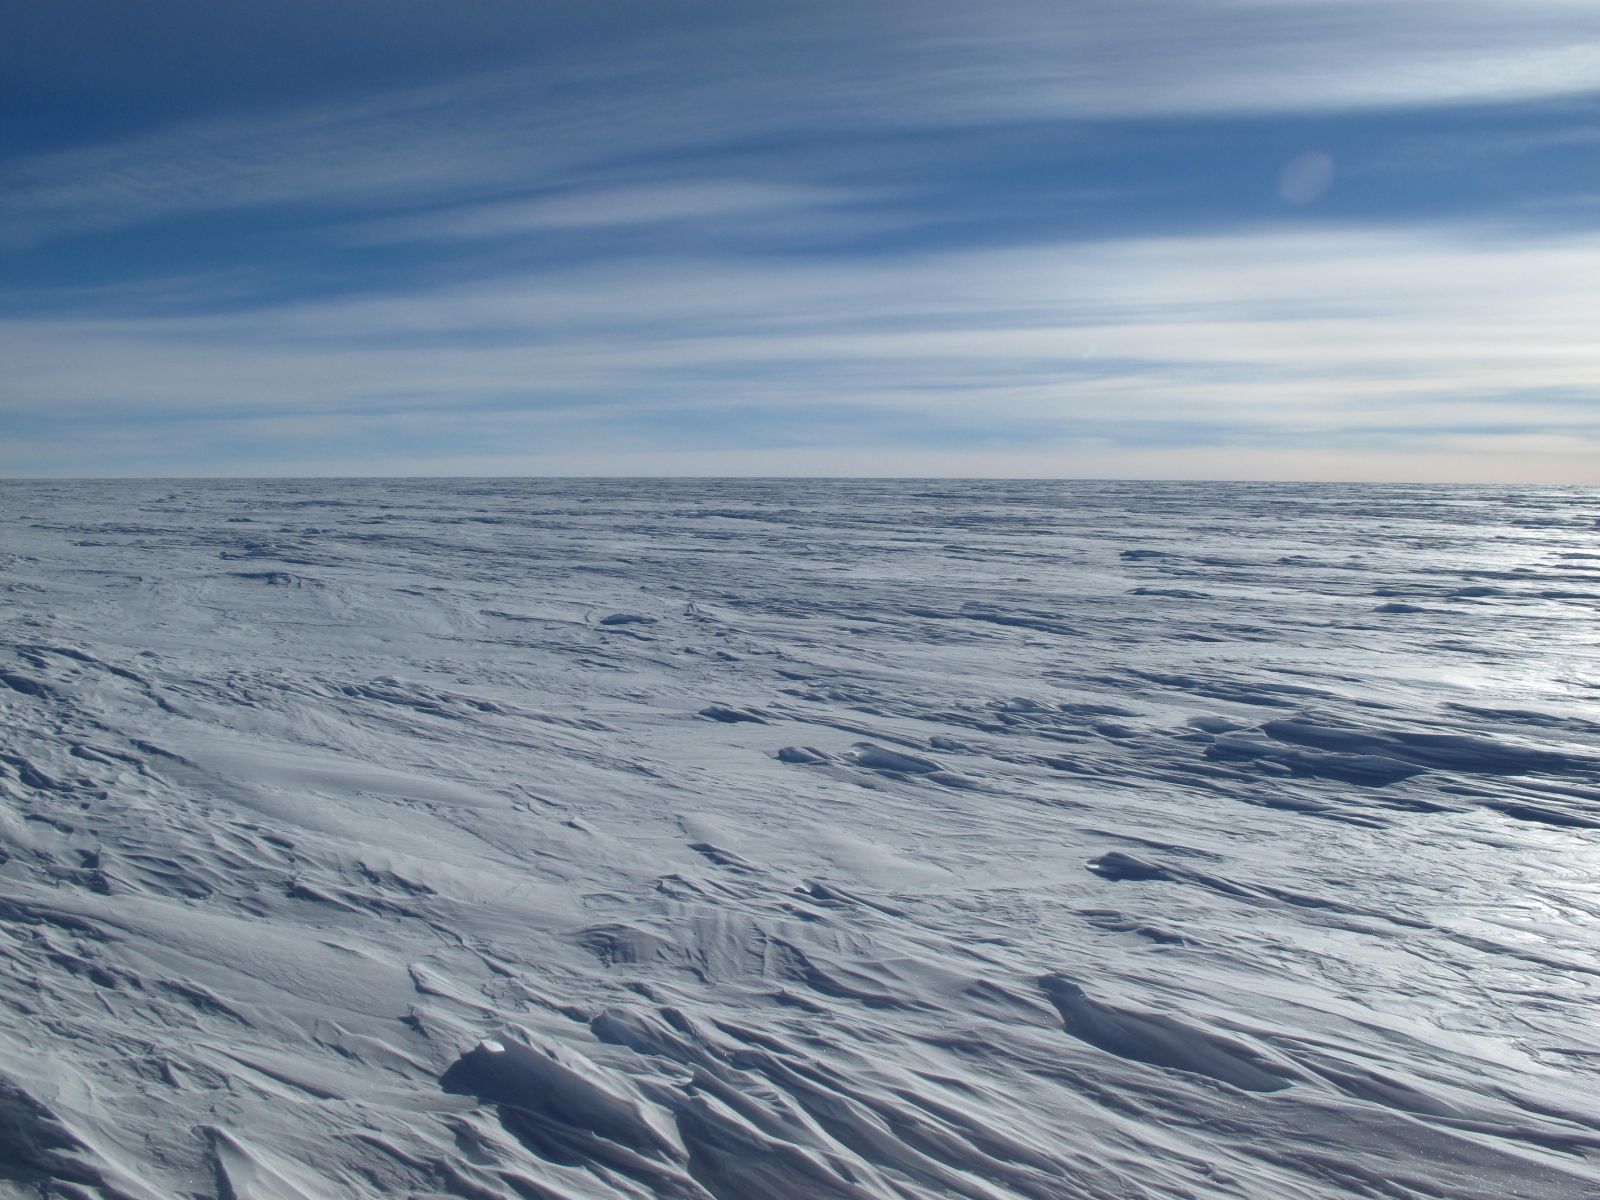 La meseta antártica oriental, donde se alcanzan las temperaturas más bajas del planeta, es una extensión desolada y azotada por el viento, del tamaño de Australia con pocas bases o instrumentos. Foto: Ted Scambos, NSIDC.